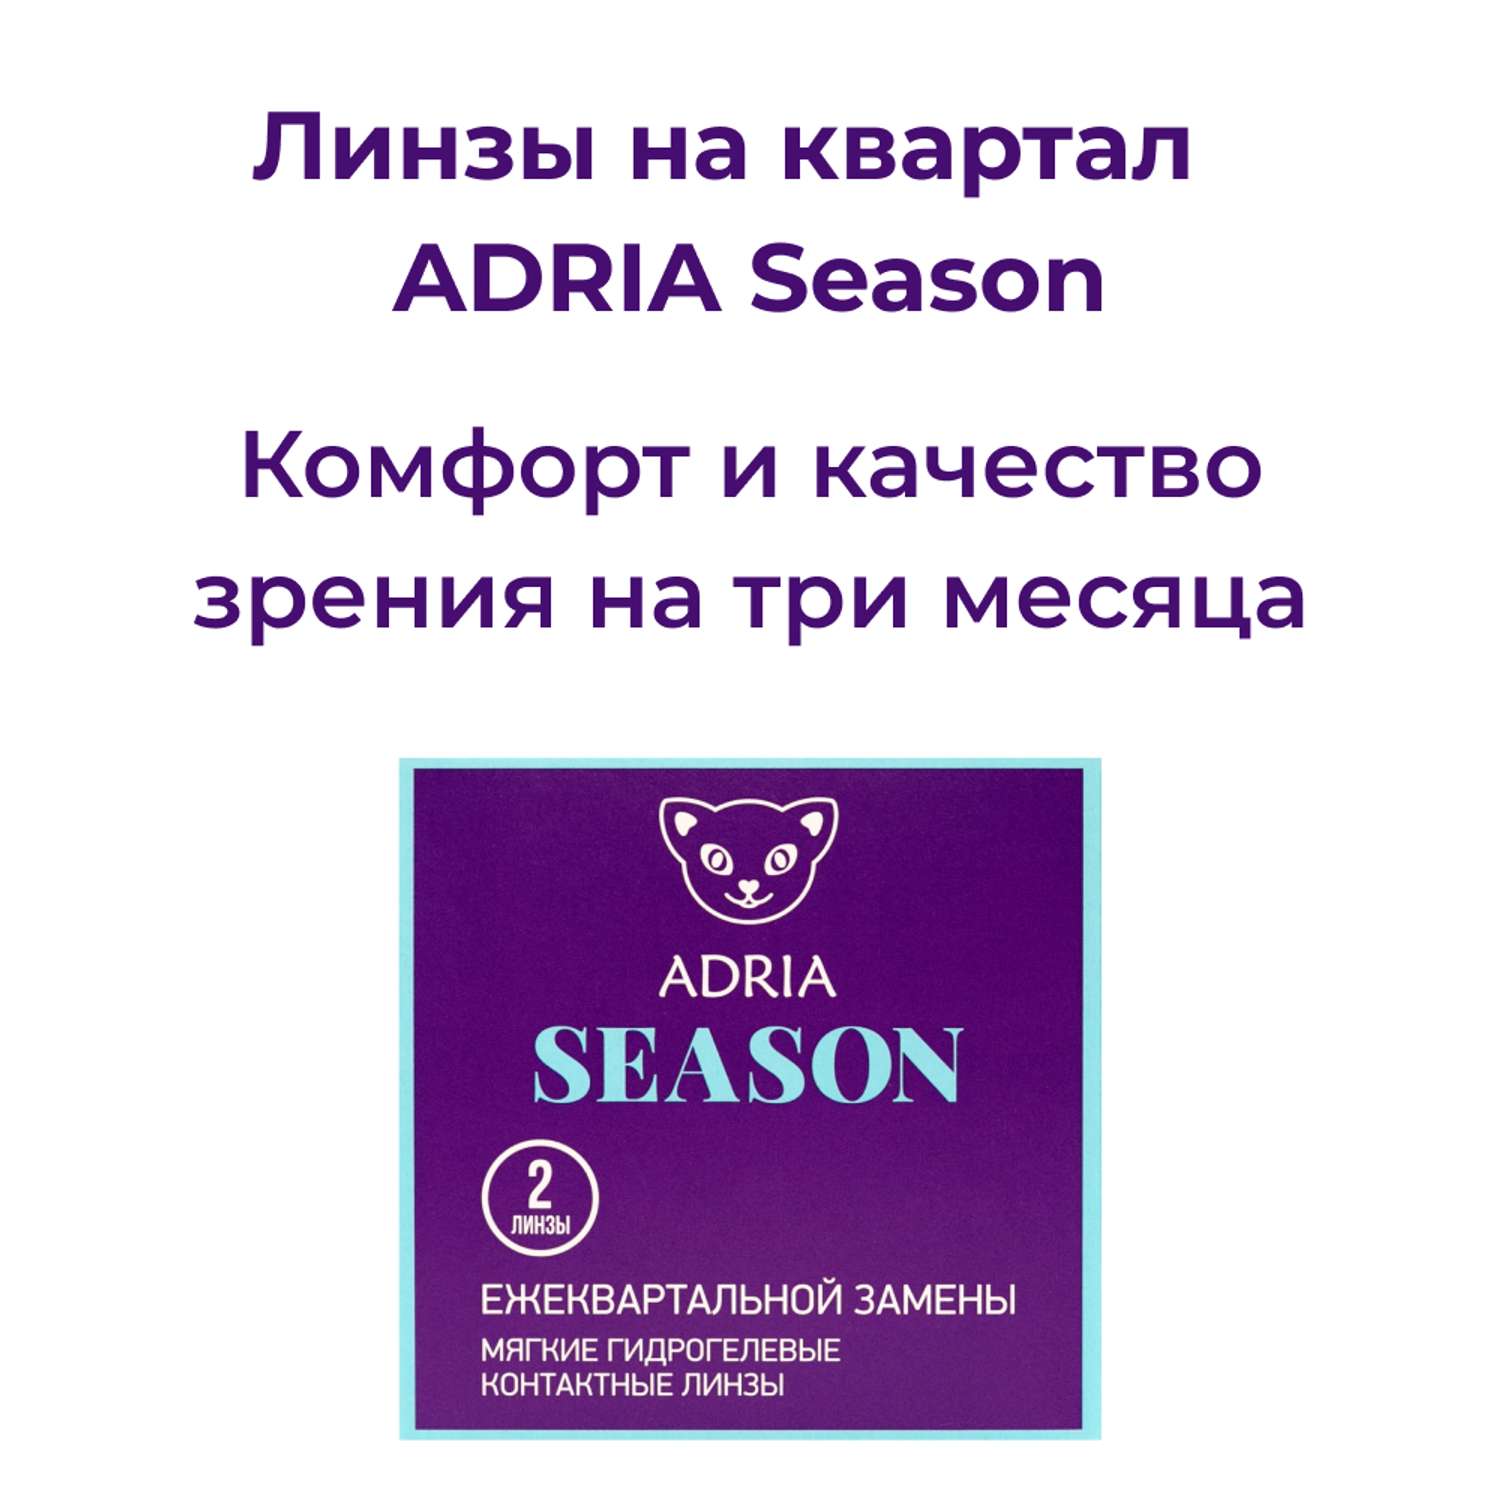 Контактные линзы ADRIA Season 2 линзы R 8.6 -4.25 - фото 2